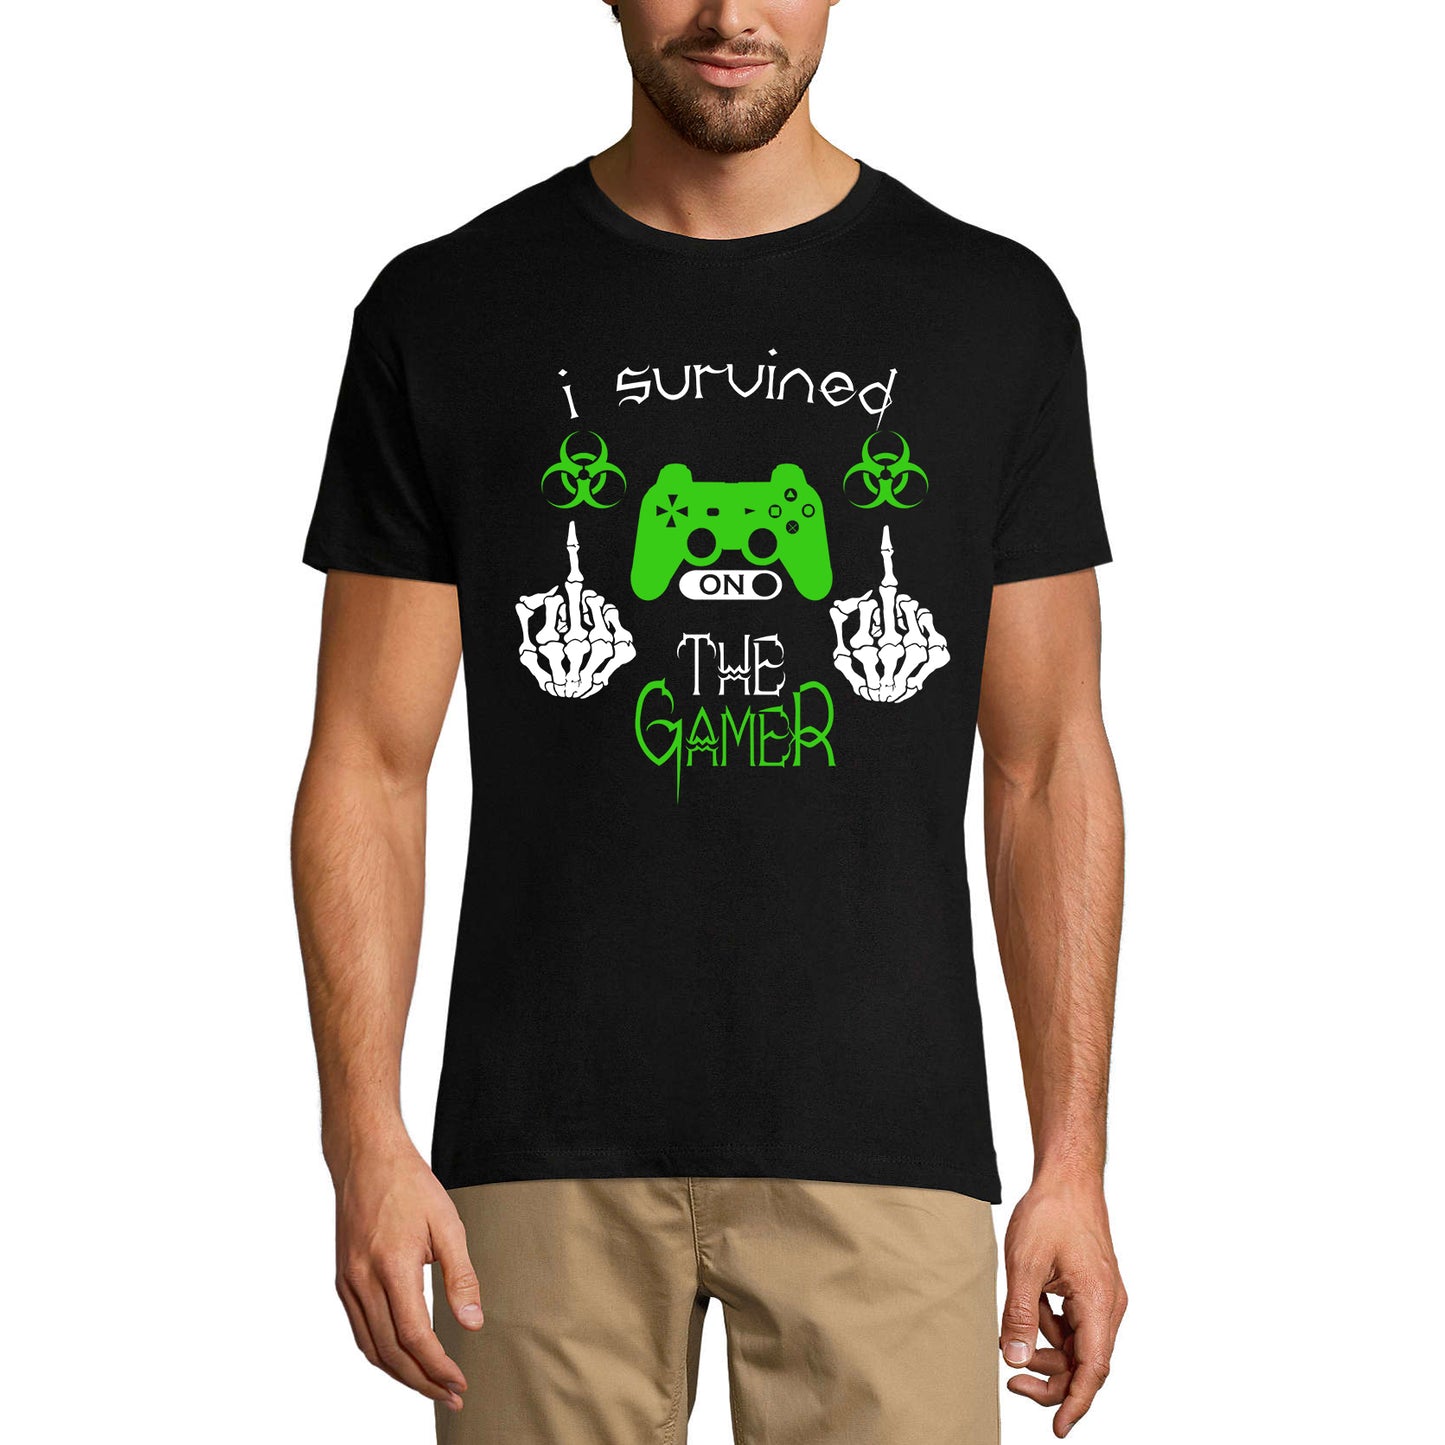 ULTRABASIC Men's Gaming T-Shirt I Survived Virus - The Gamer - Funny Humor Shirt